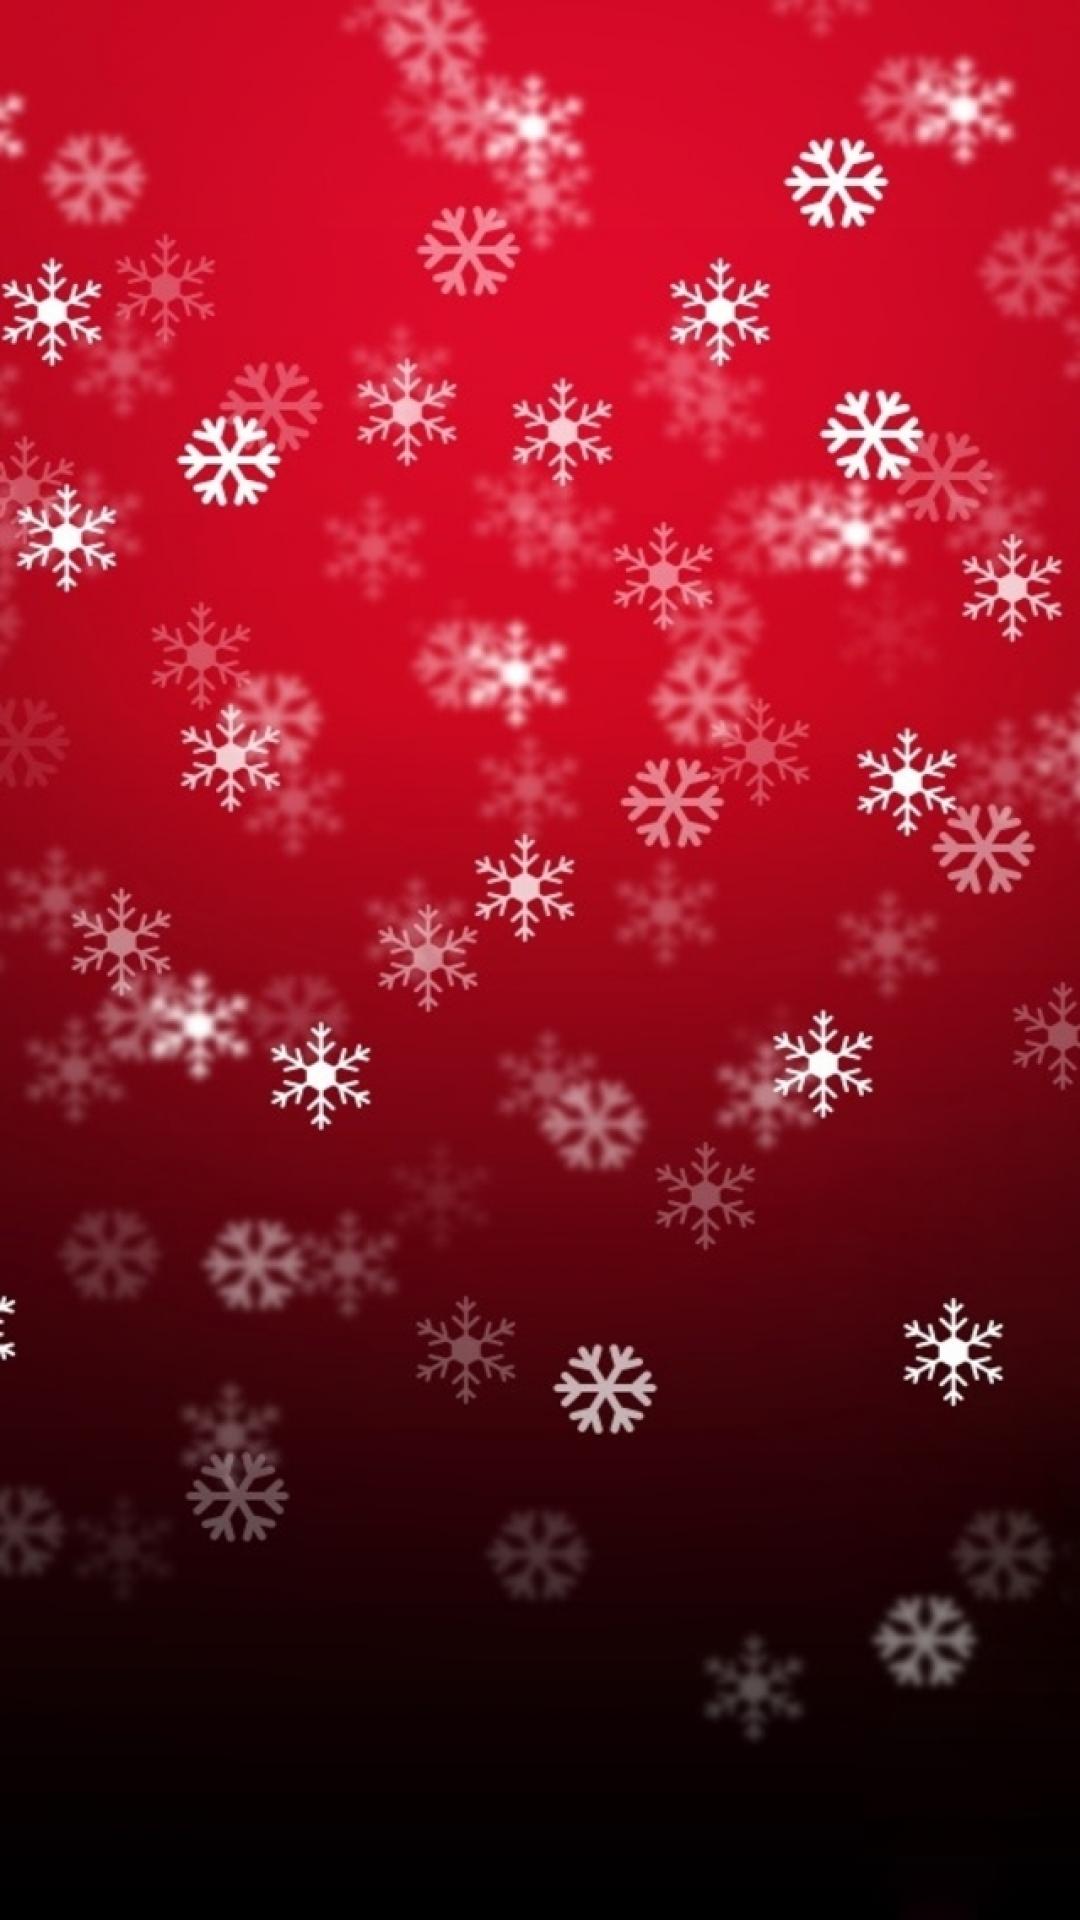 15 hình nền merry christmas đẹp lung linh cho iphone - Hình 11